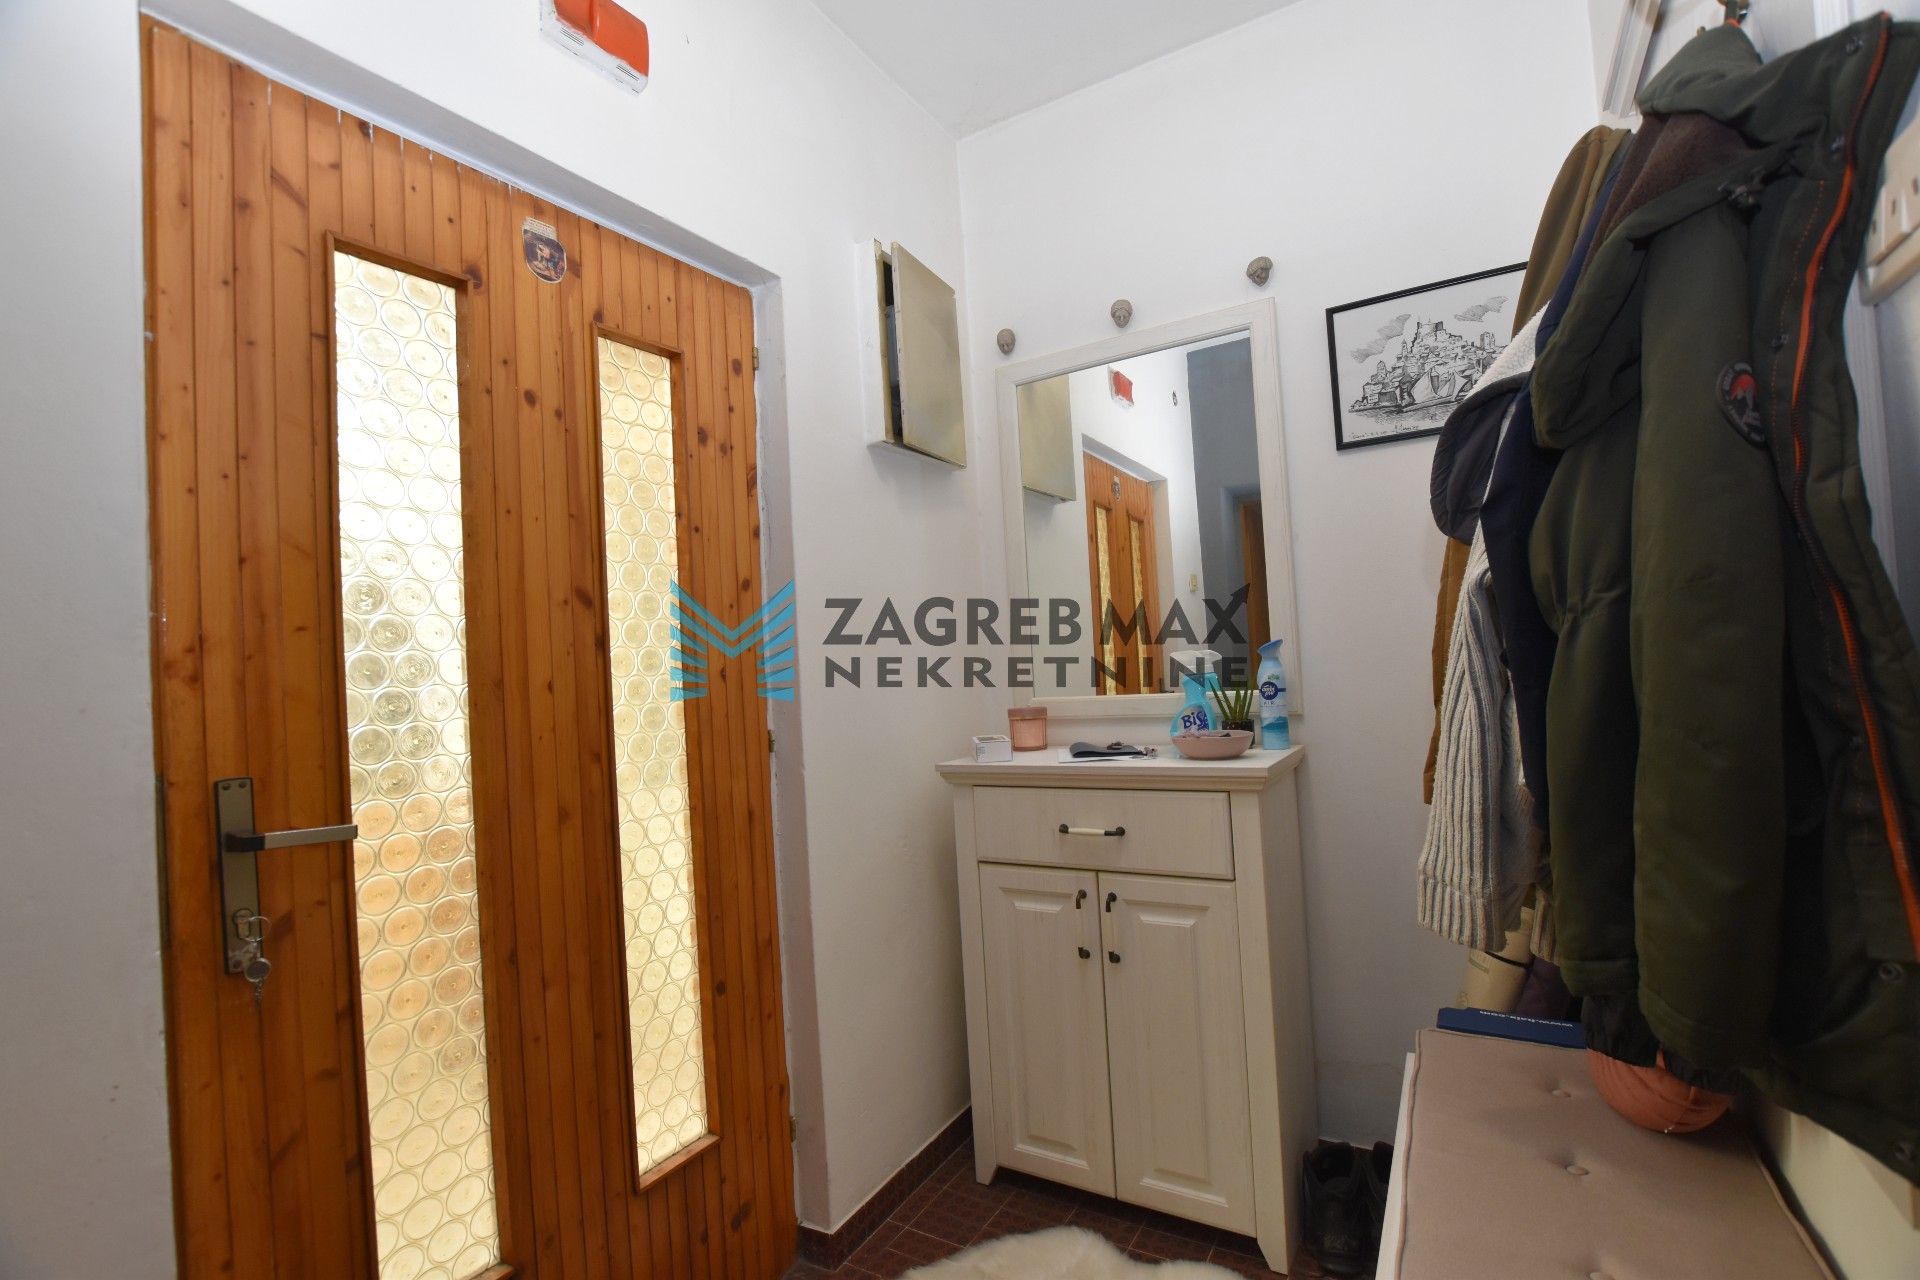 Zagreb - ŠIBENIK Baldekin 3, obiteljska kuća 200 m2, 3 odvojena stana, odlična lokacija, garaža, parking